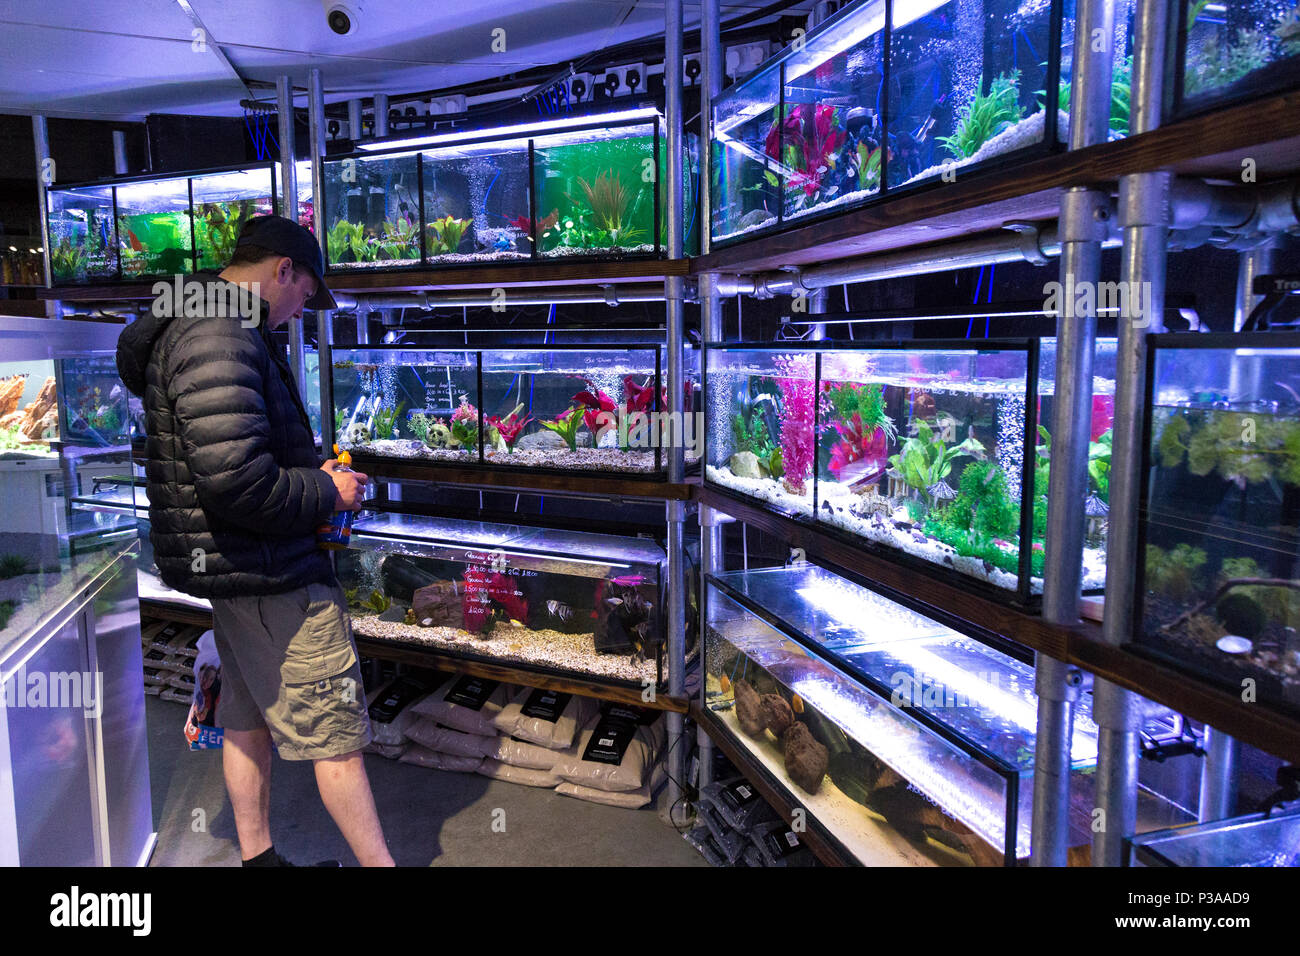 Un cliente che guarda le vasche di pesci all'interno di un negozio di animali, Manchester, Regno Unito Foto Stock